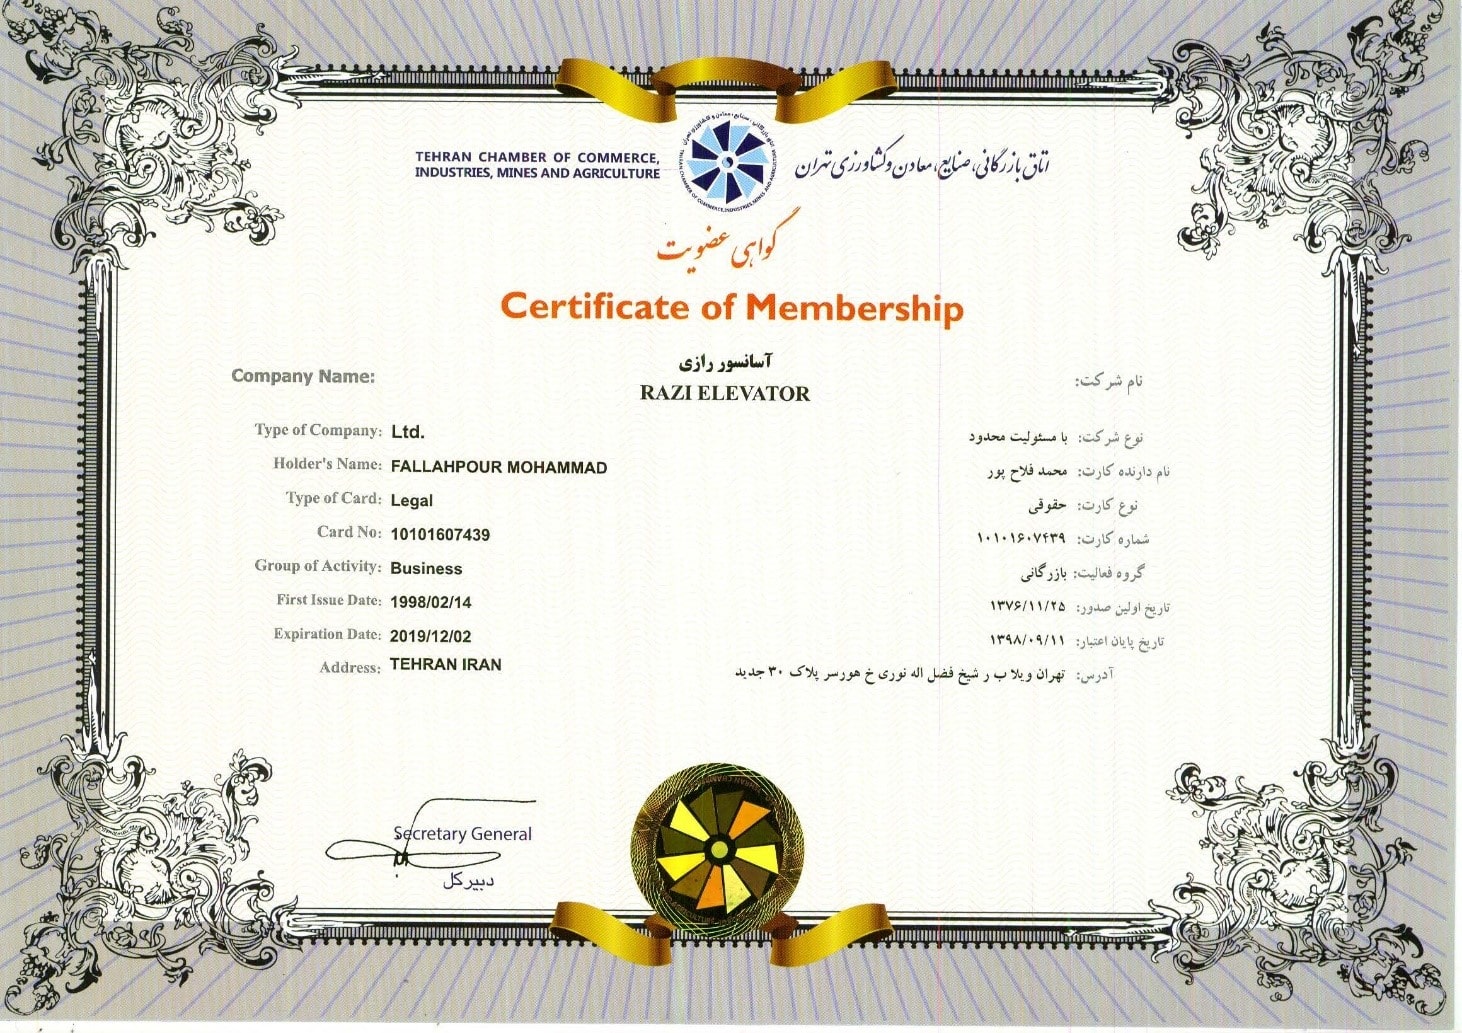 گواهی عضویت آسانسور رازی در اتاق بازرگانی، صنایع، معادن و کشاورزی تهران